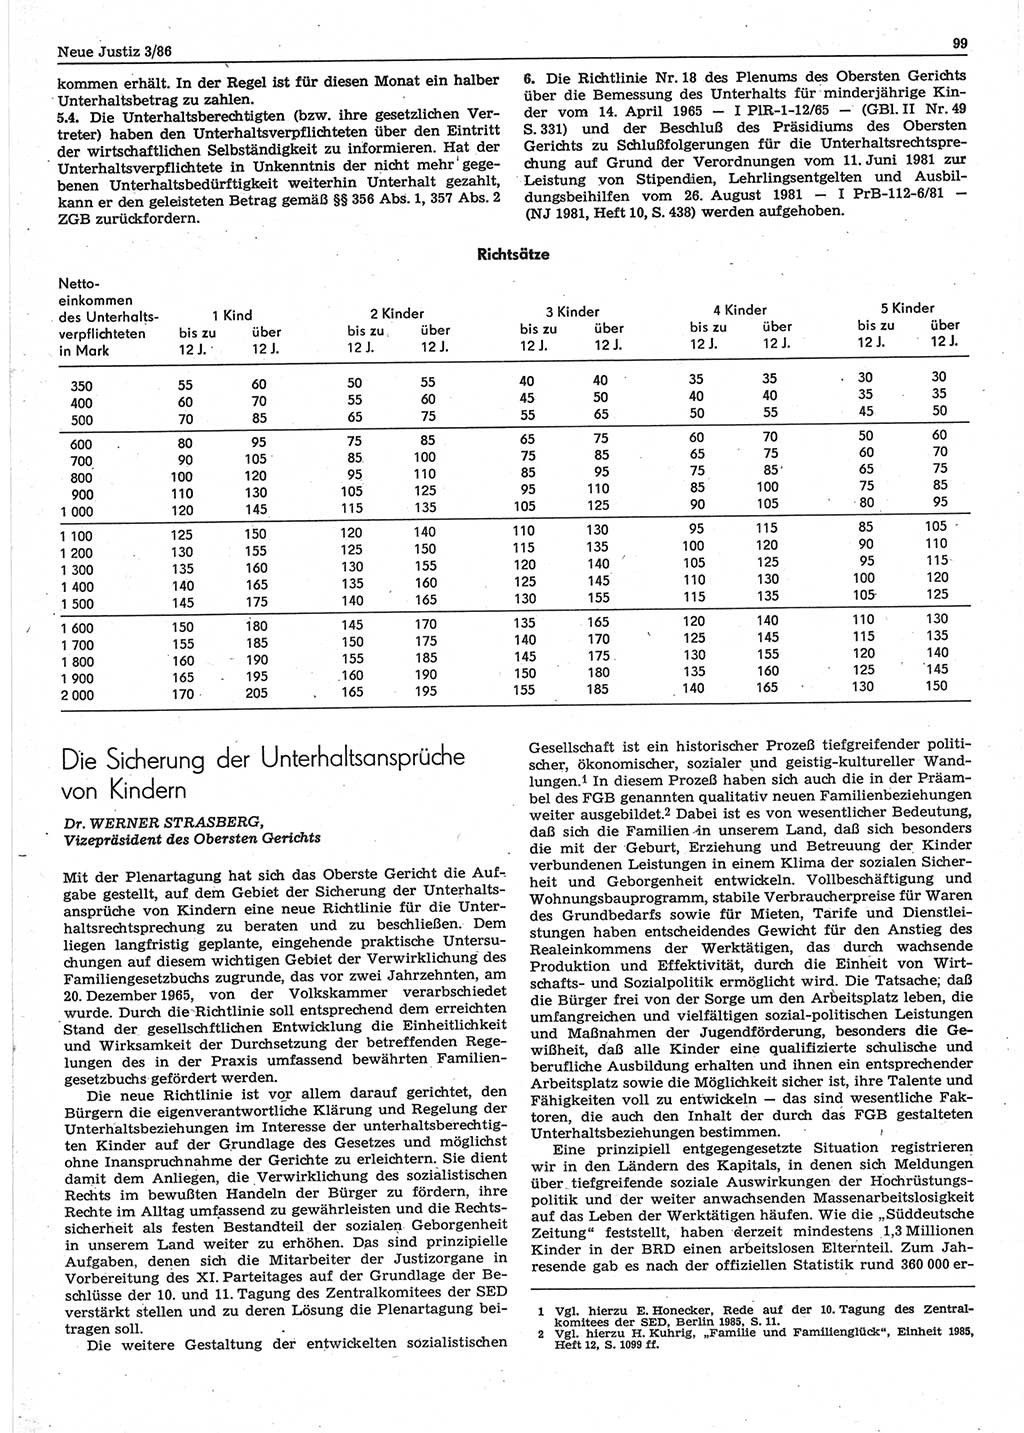 Neue Justiz (NJ), Zeitschrift für sozialistisches Recht und Gesetzlichkeit [Deutsche Demokratische Republik (DDR)], 40. Jahrgang 1986, Seite 99 (NJ DDR 1986, S. 99)